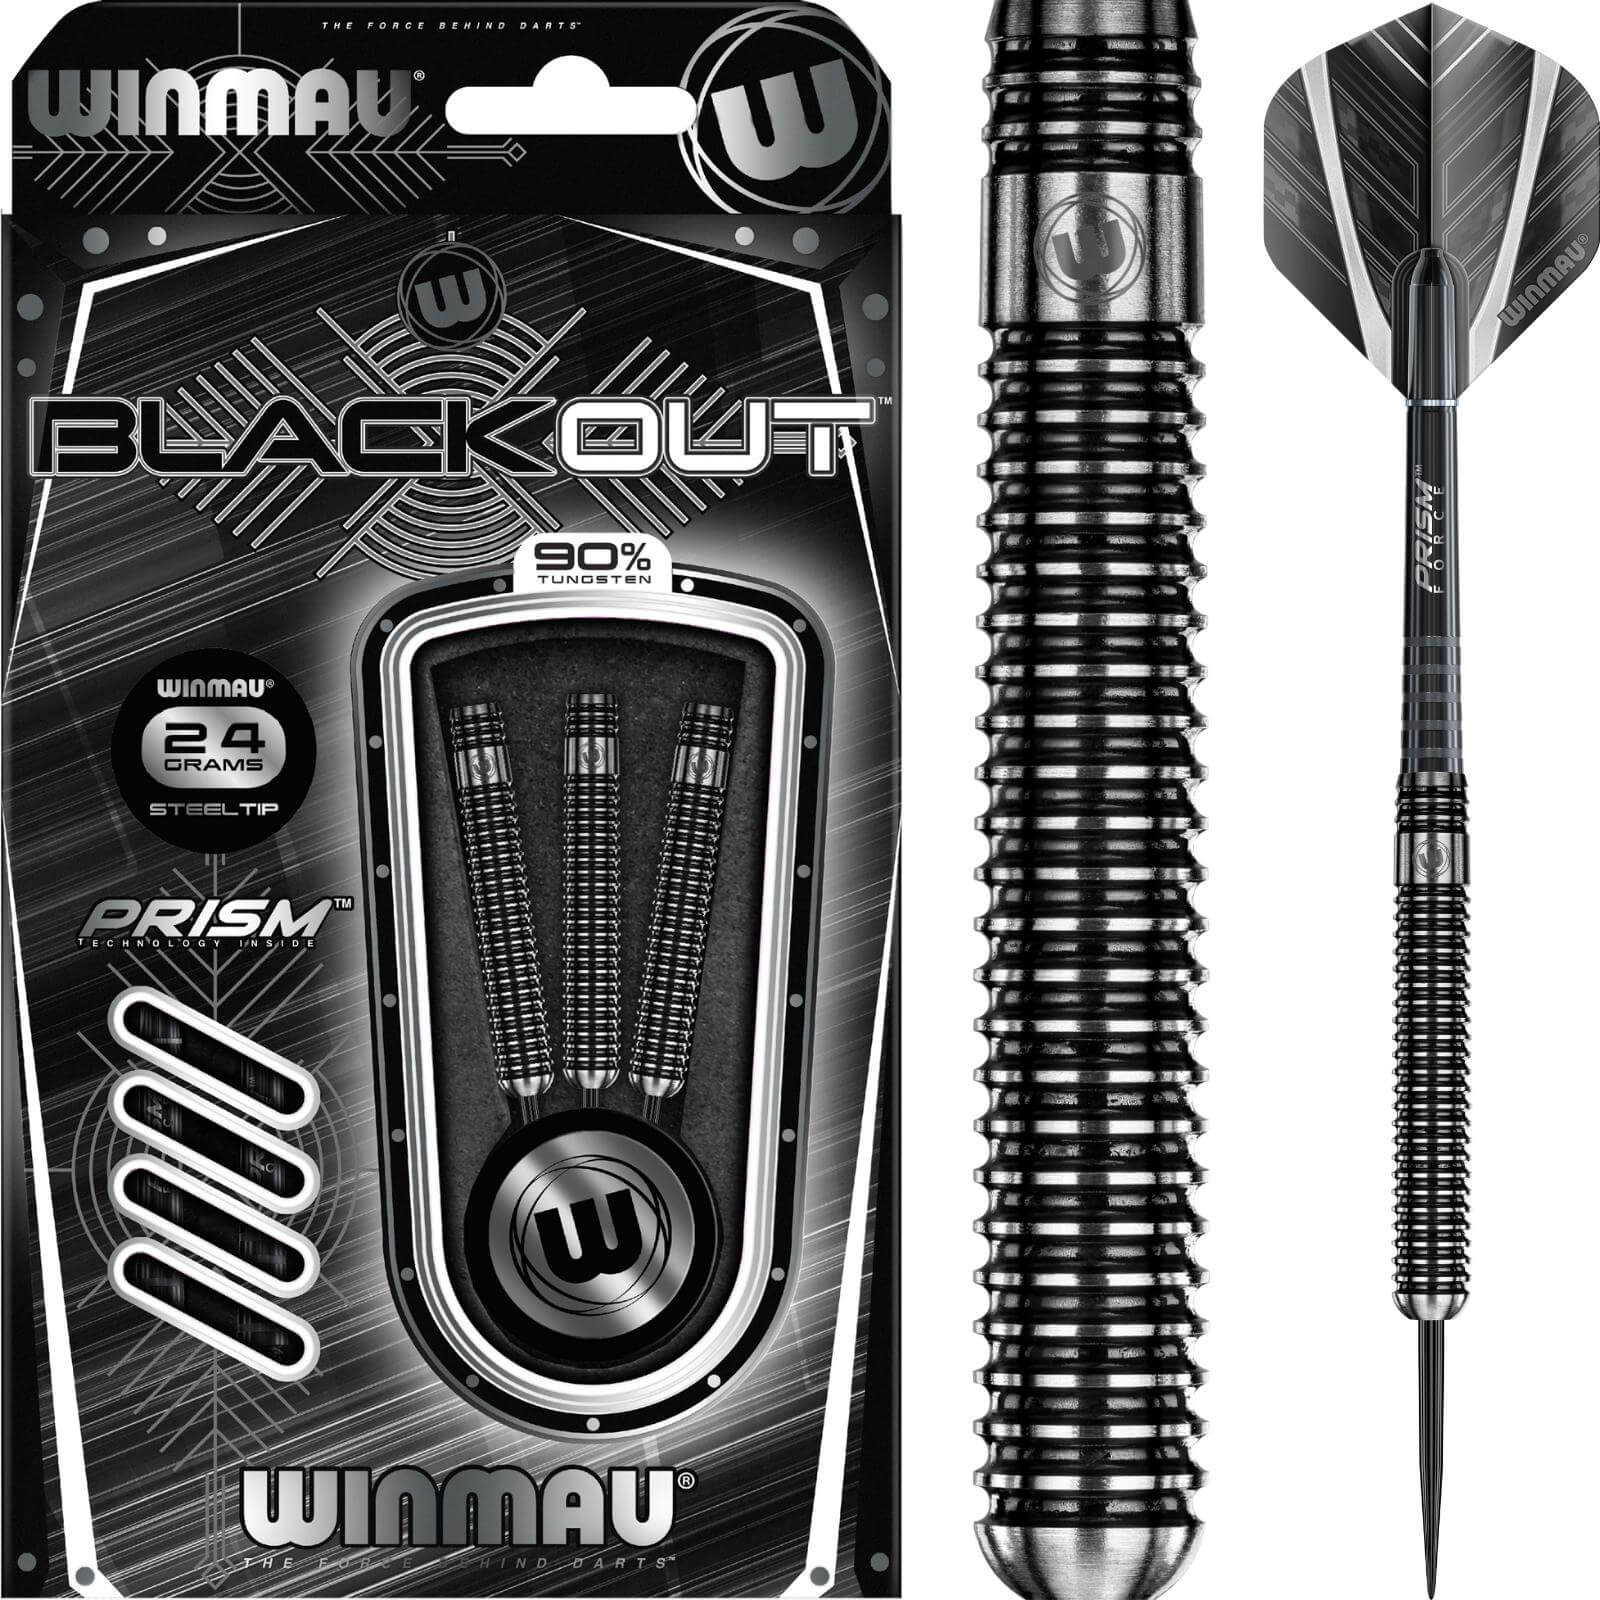 Darts - Winmau - Blackout Darts - Steel Tip - 90% Tungsten - 21g 22g 23g 24g 25g 26g 28g 